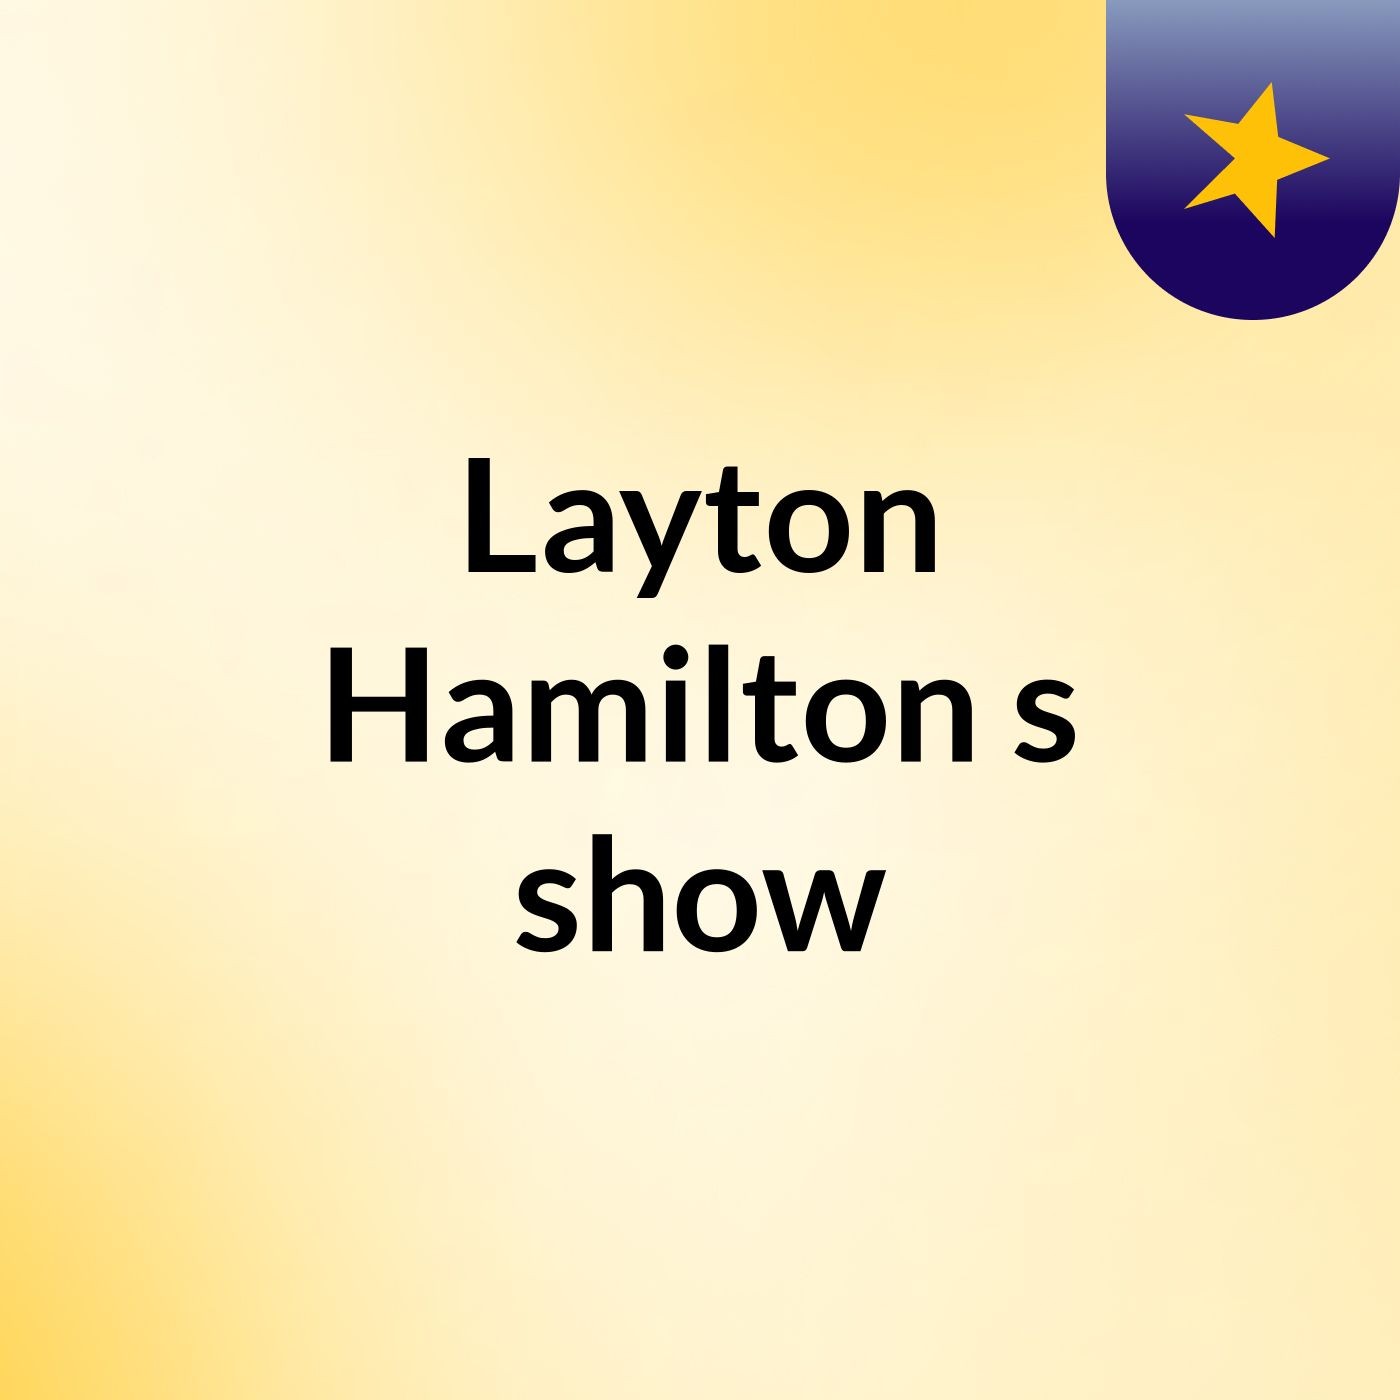 Episode 4 - Layton Hamilton's show